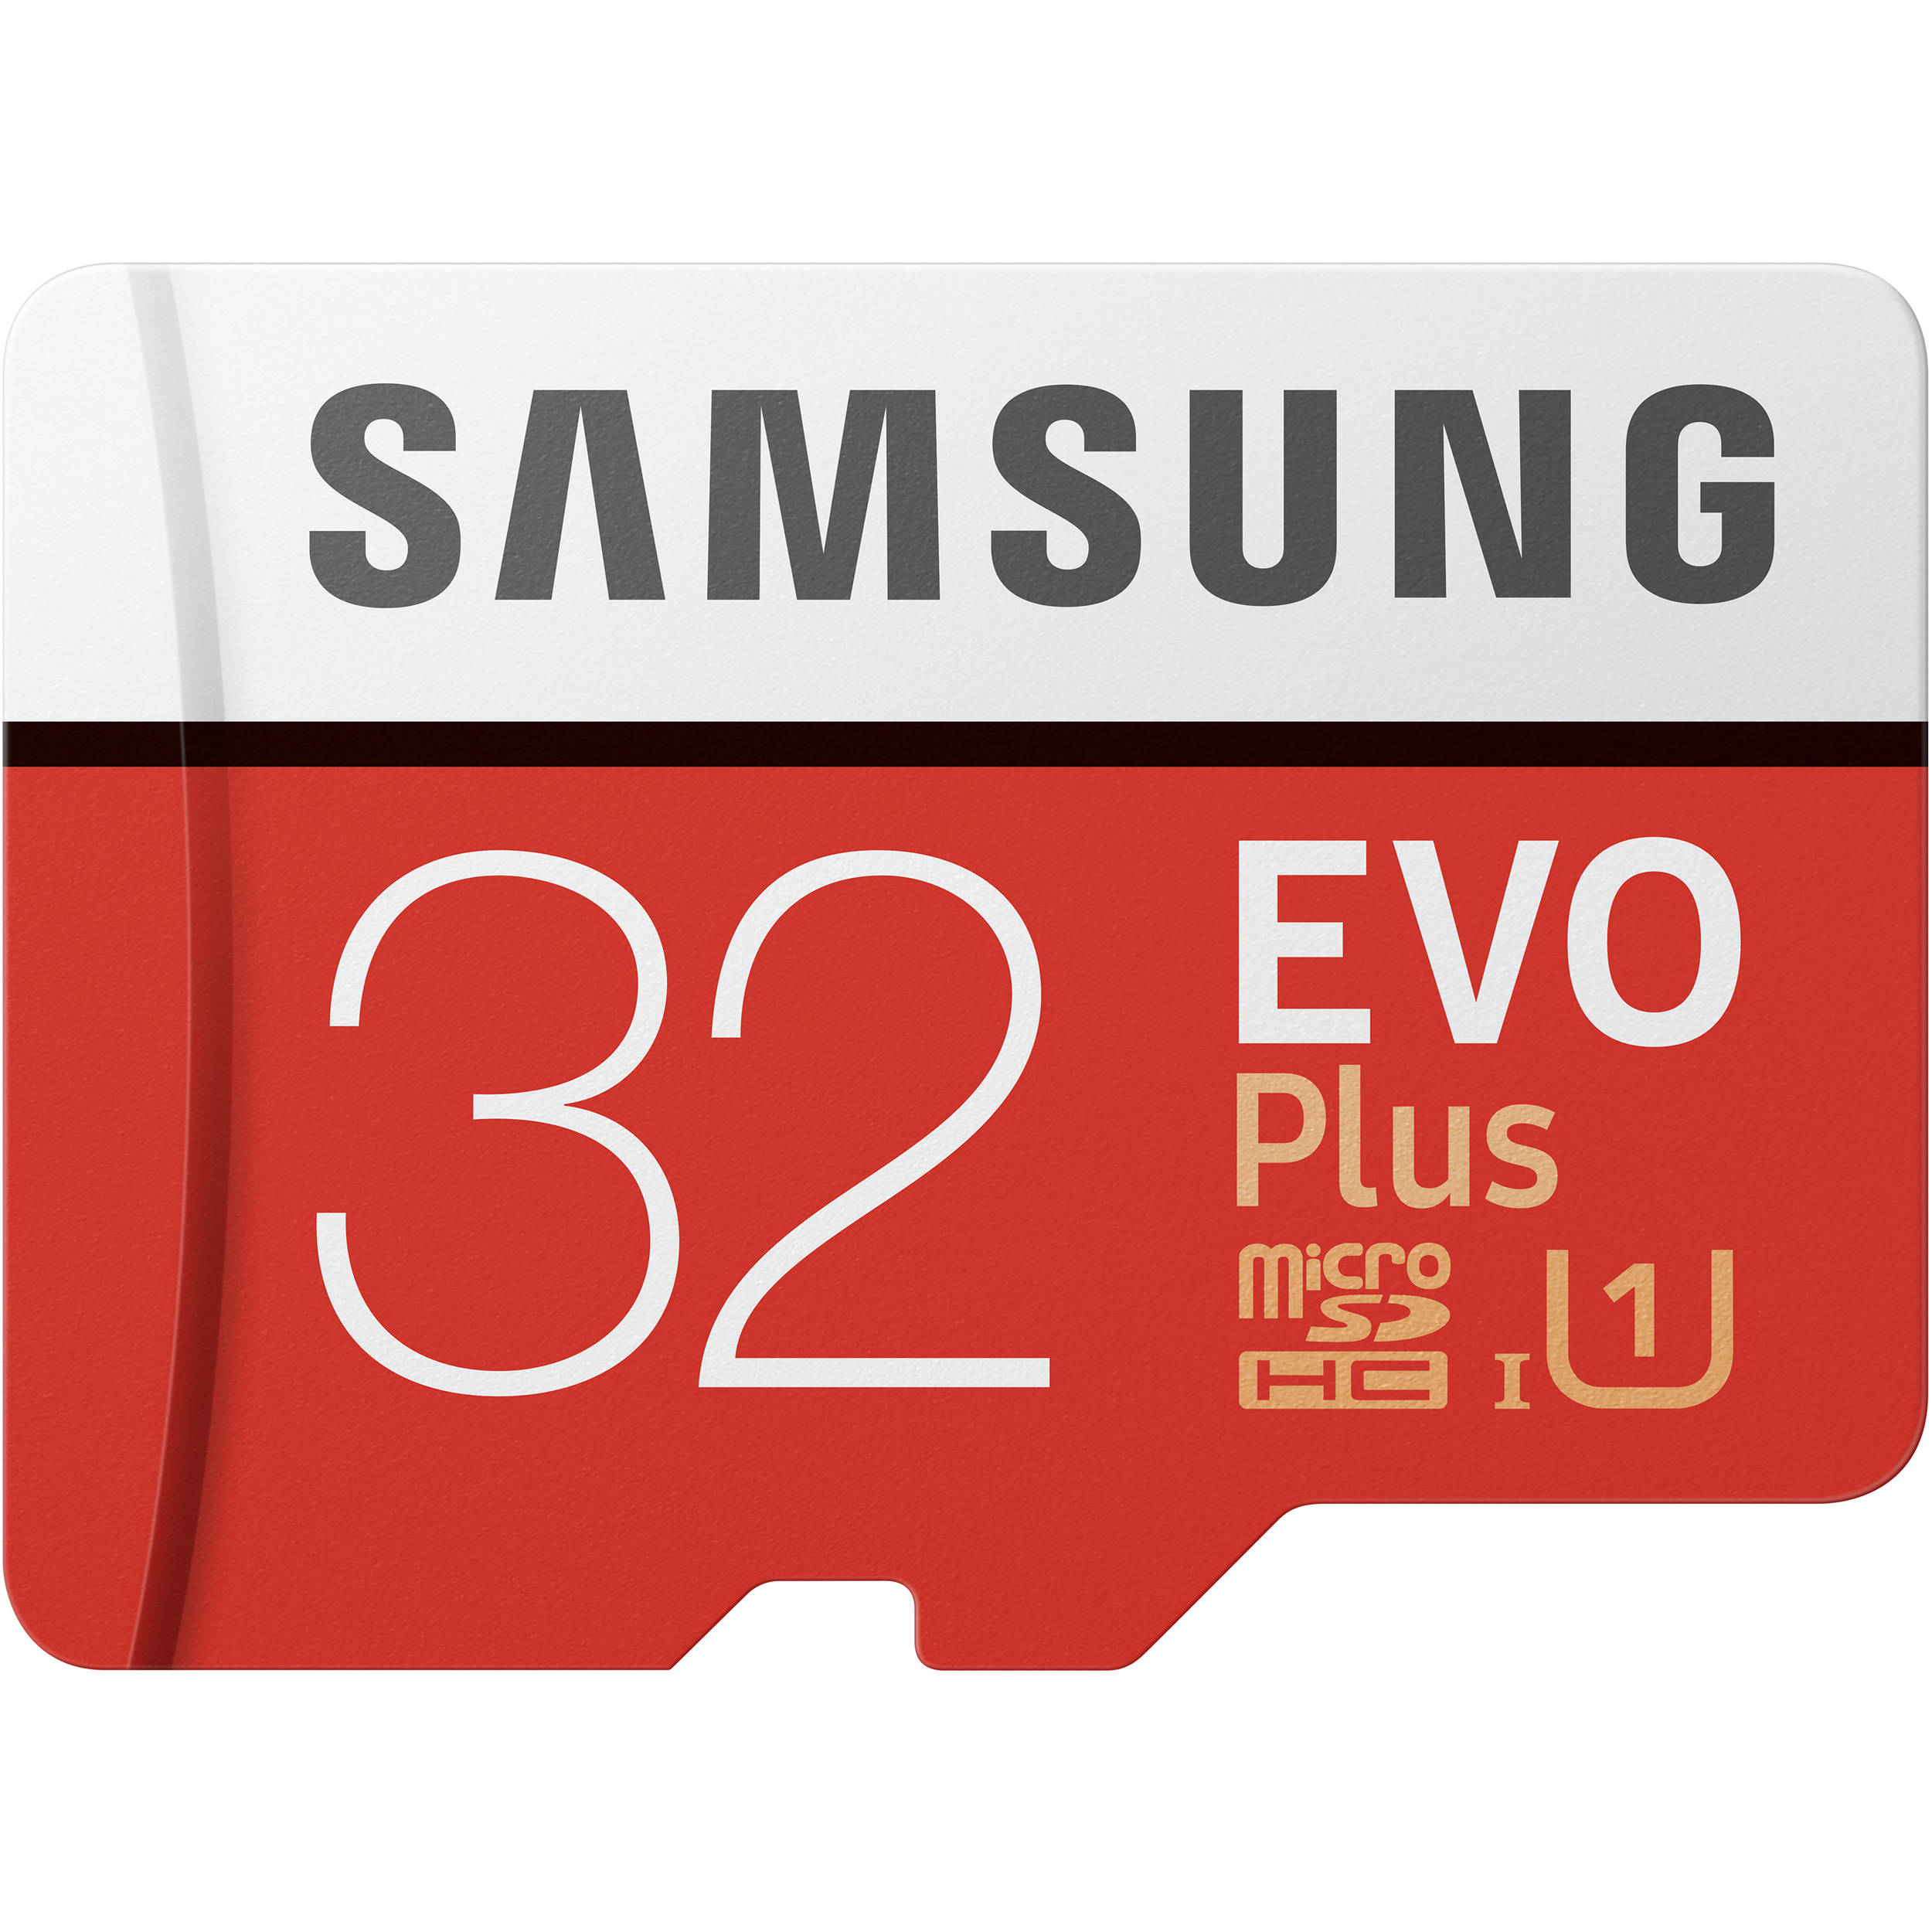 کارت حافظه microSDHC سامسونگ مدل Evo Plus کلاس 10 استاندارد UHS-I U1 سرعت 80MBps ظرفیت 32 گیگابایت